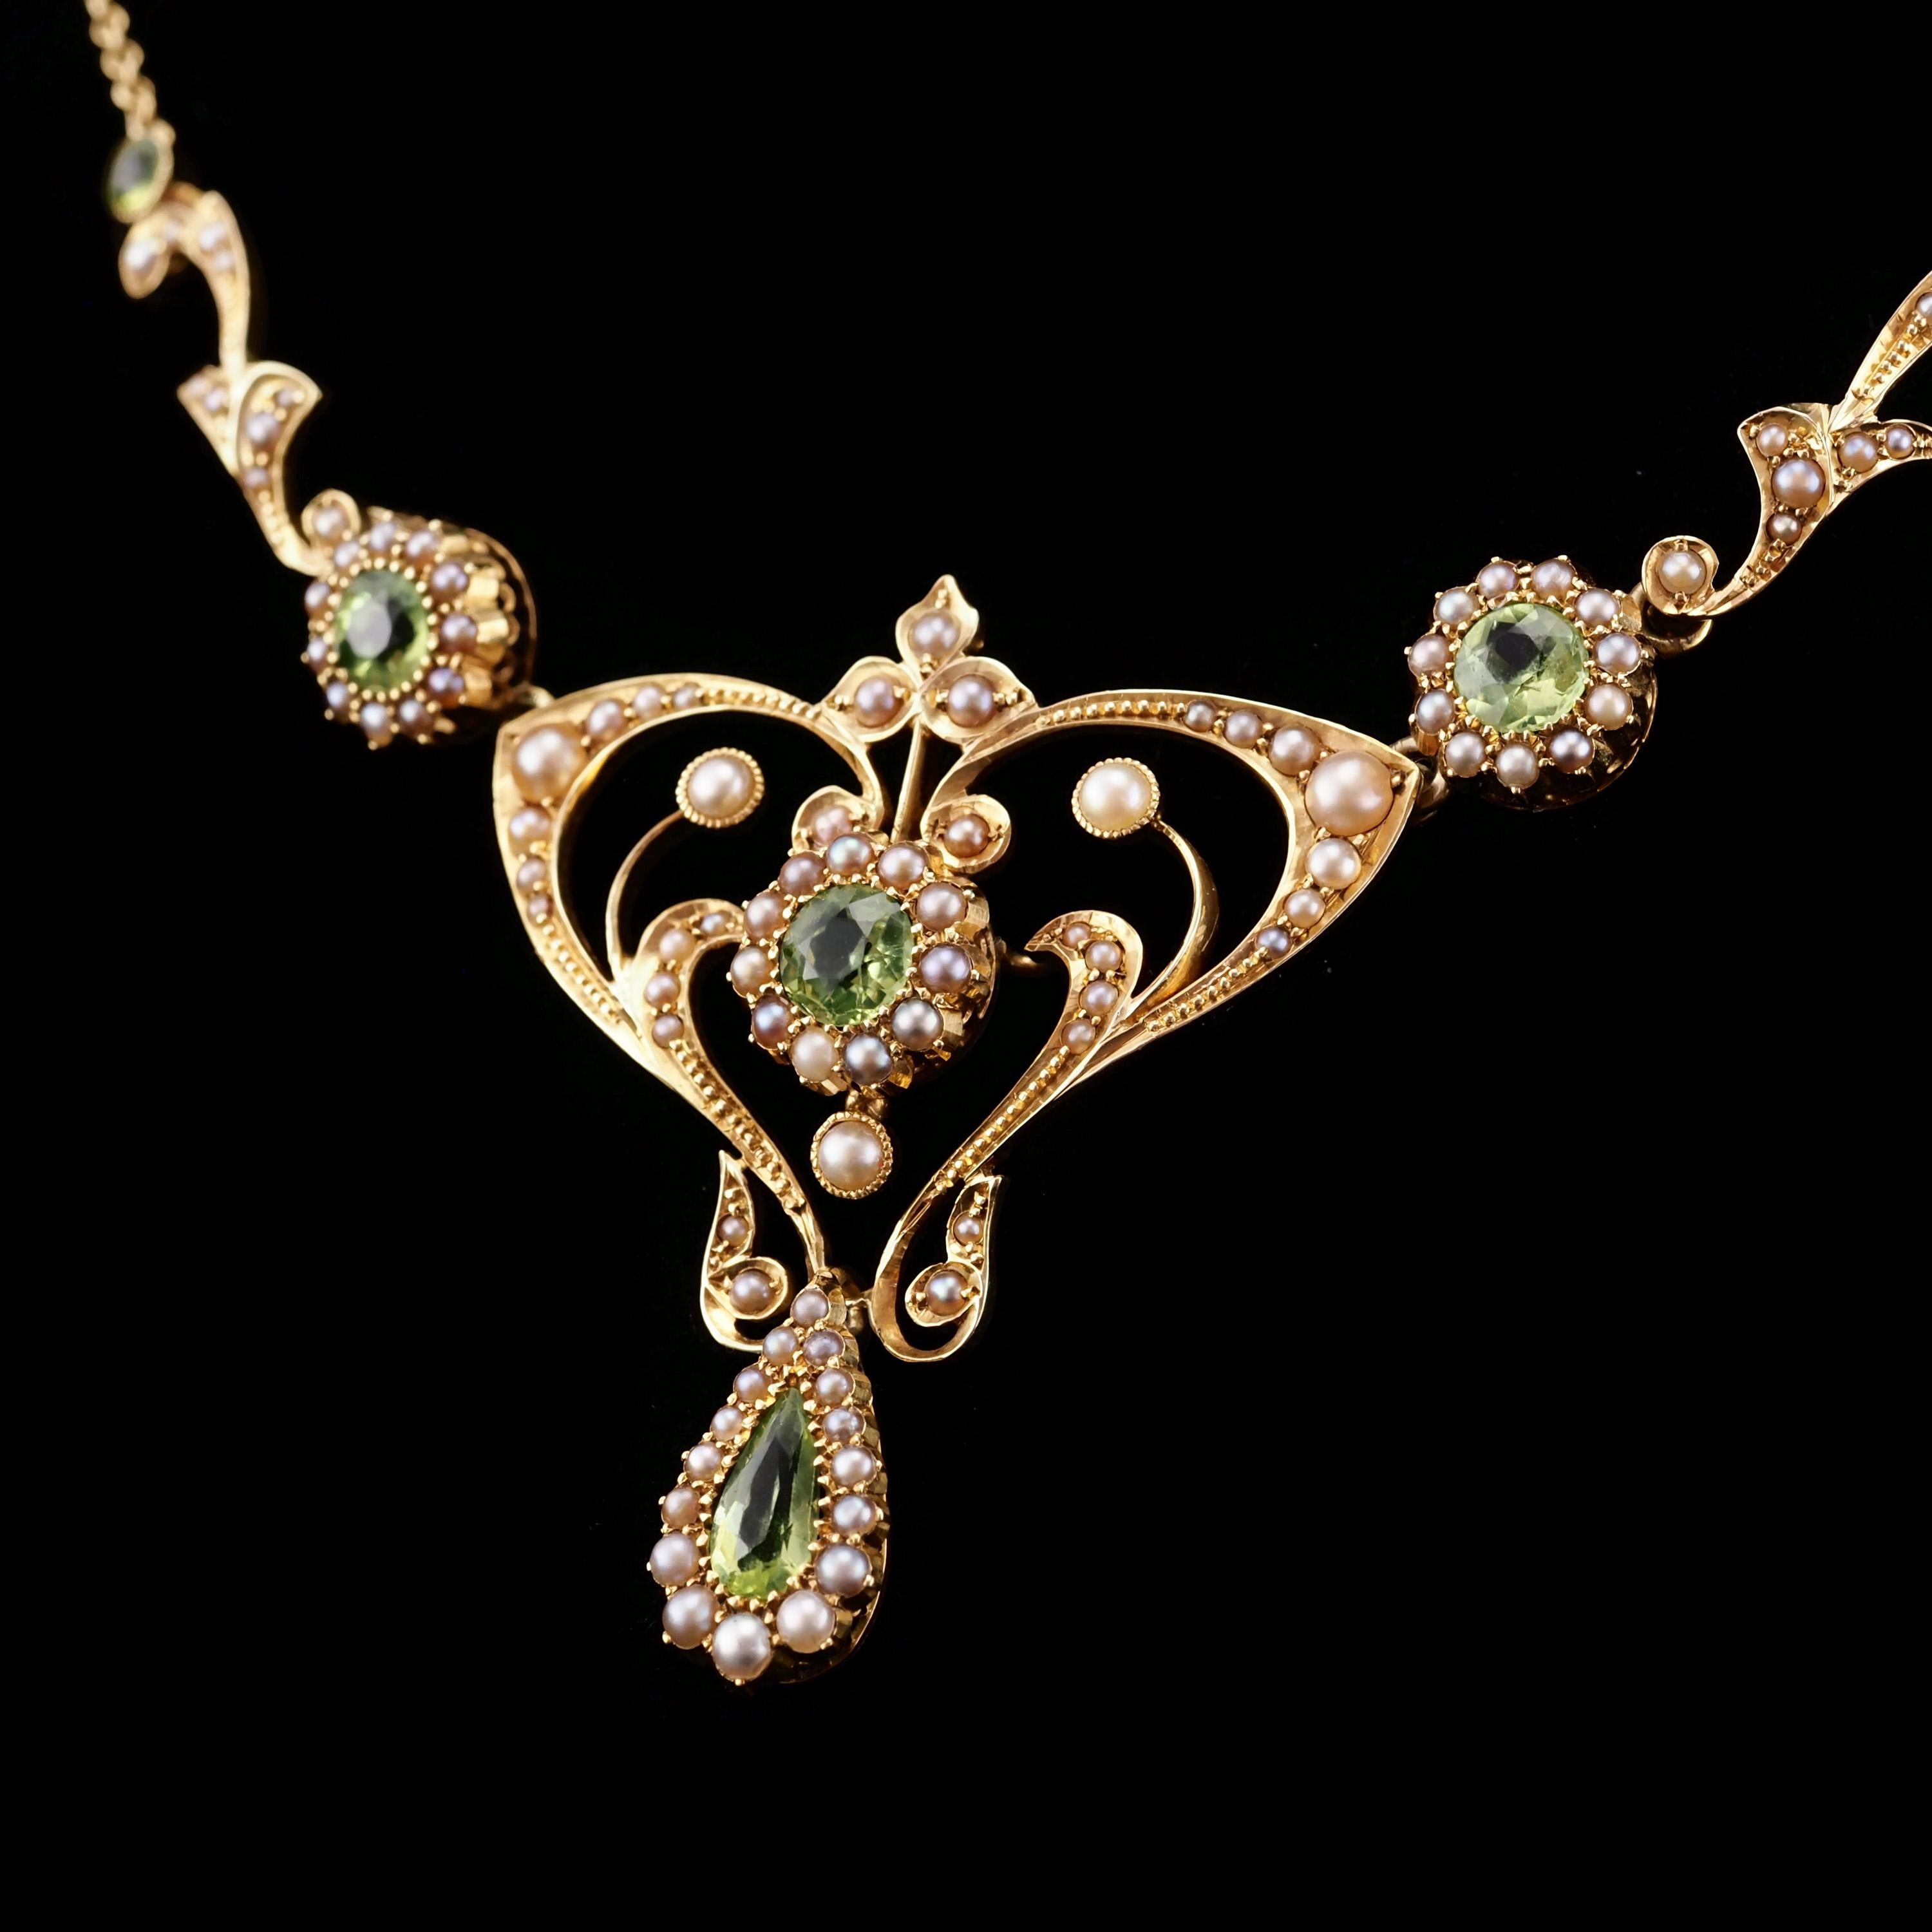 Antique 15K Gold Peridot & Pearl Lavalier Necklace - Art Nouveau c.1900s 5